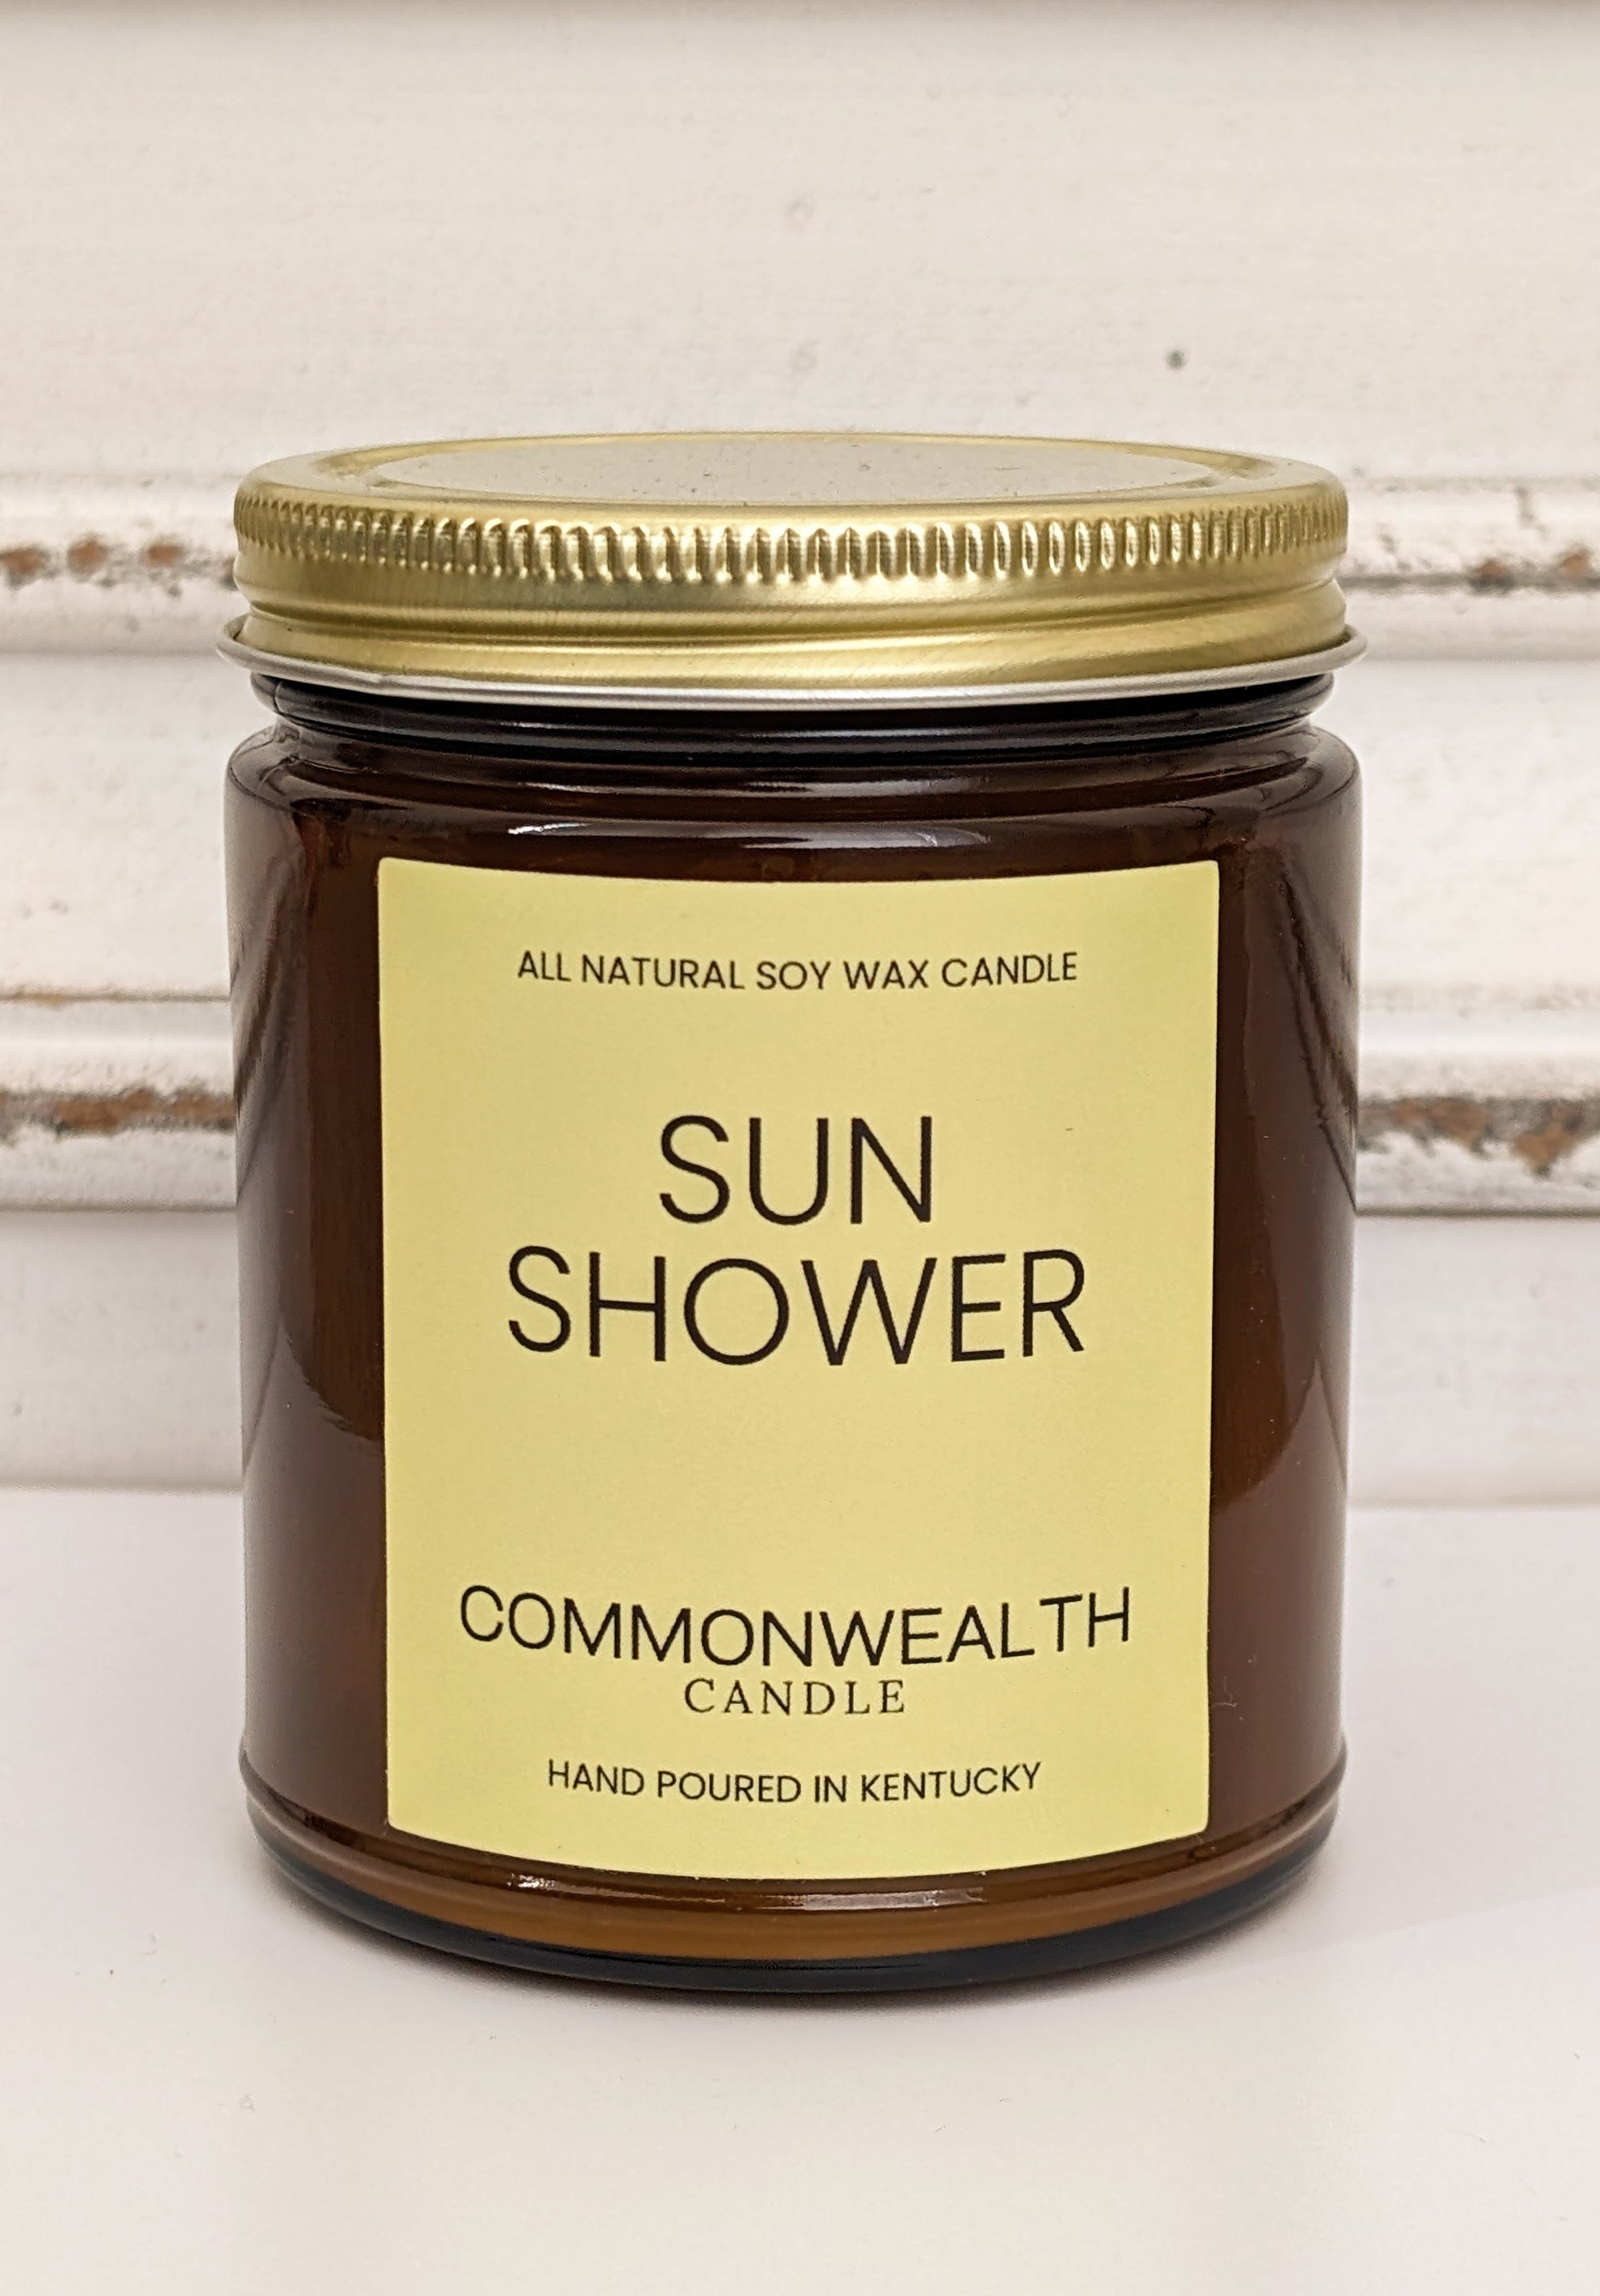 Sun Shower